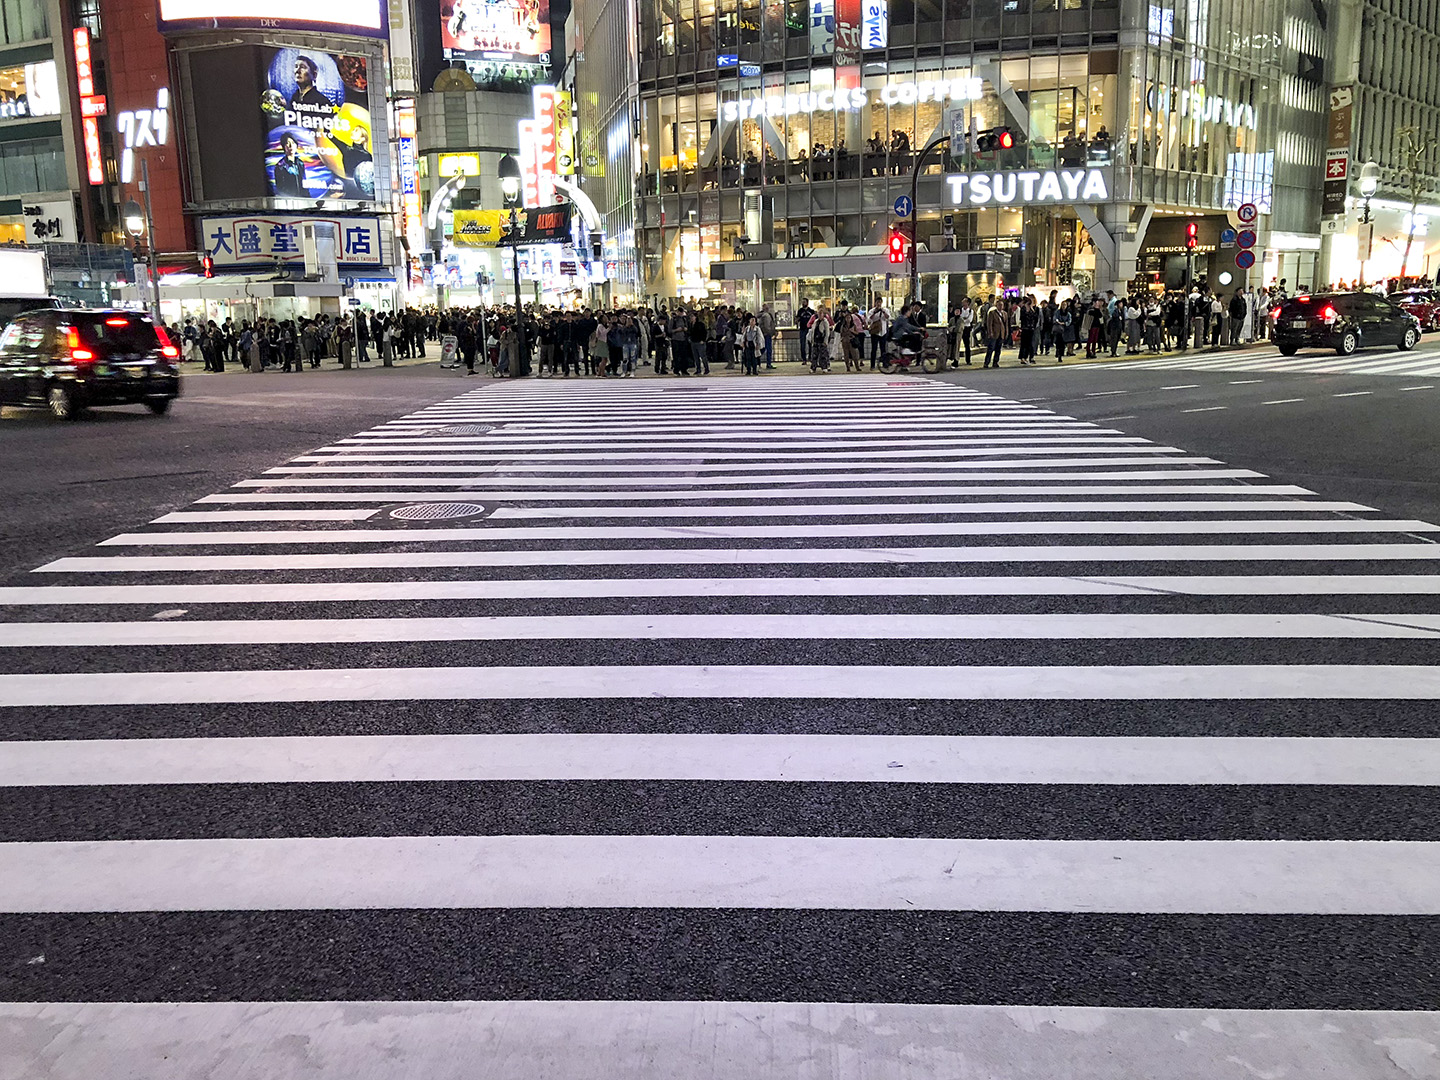 Ena hörnet av den världsberömda korsningen "Shibuya Crossing" i Tokyo